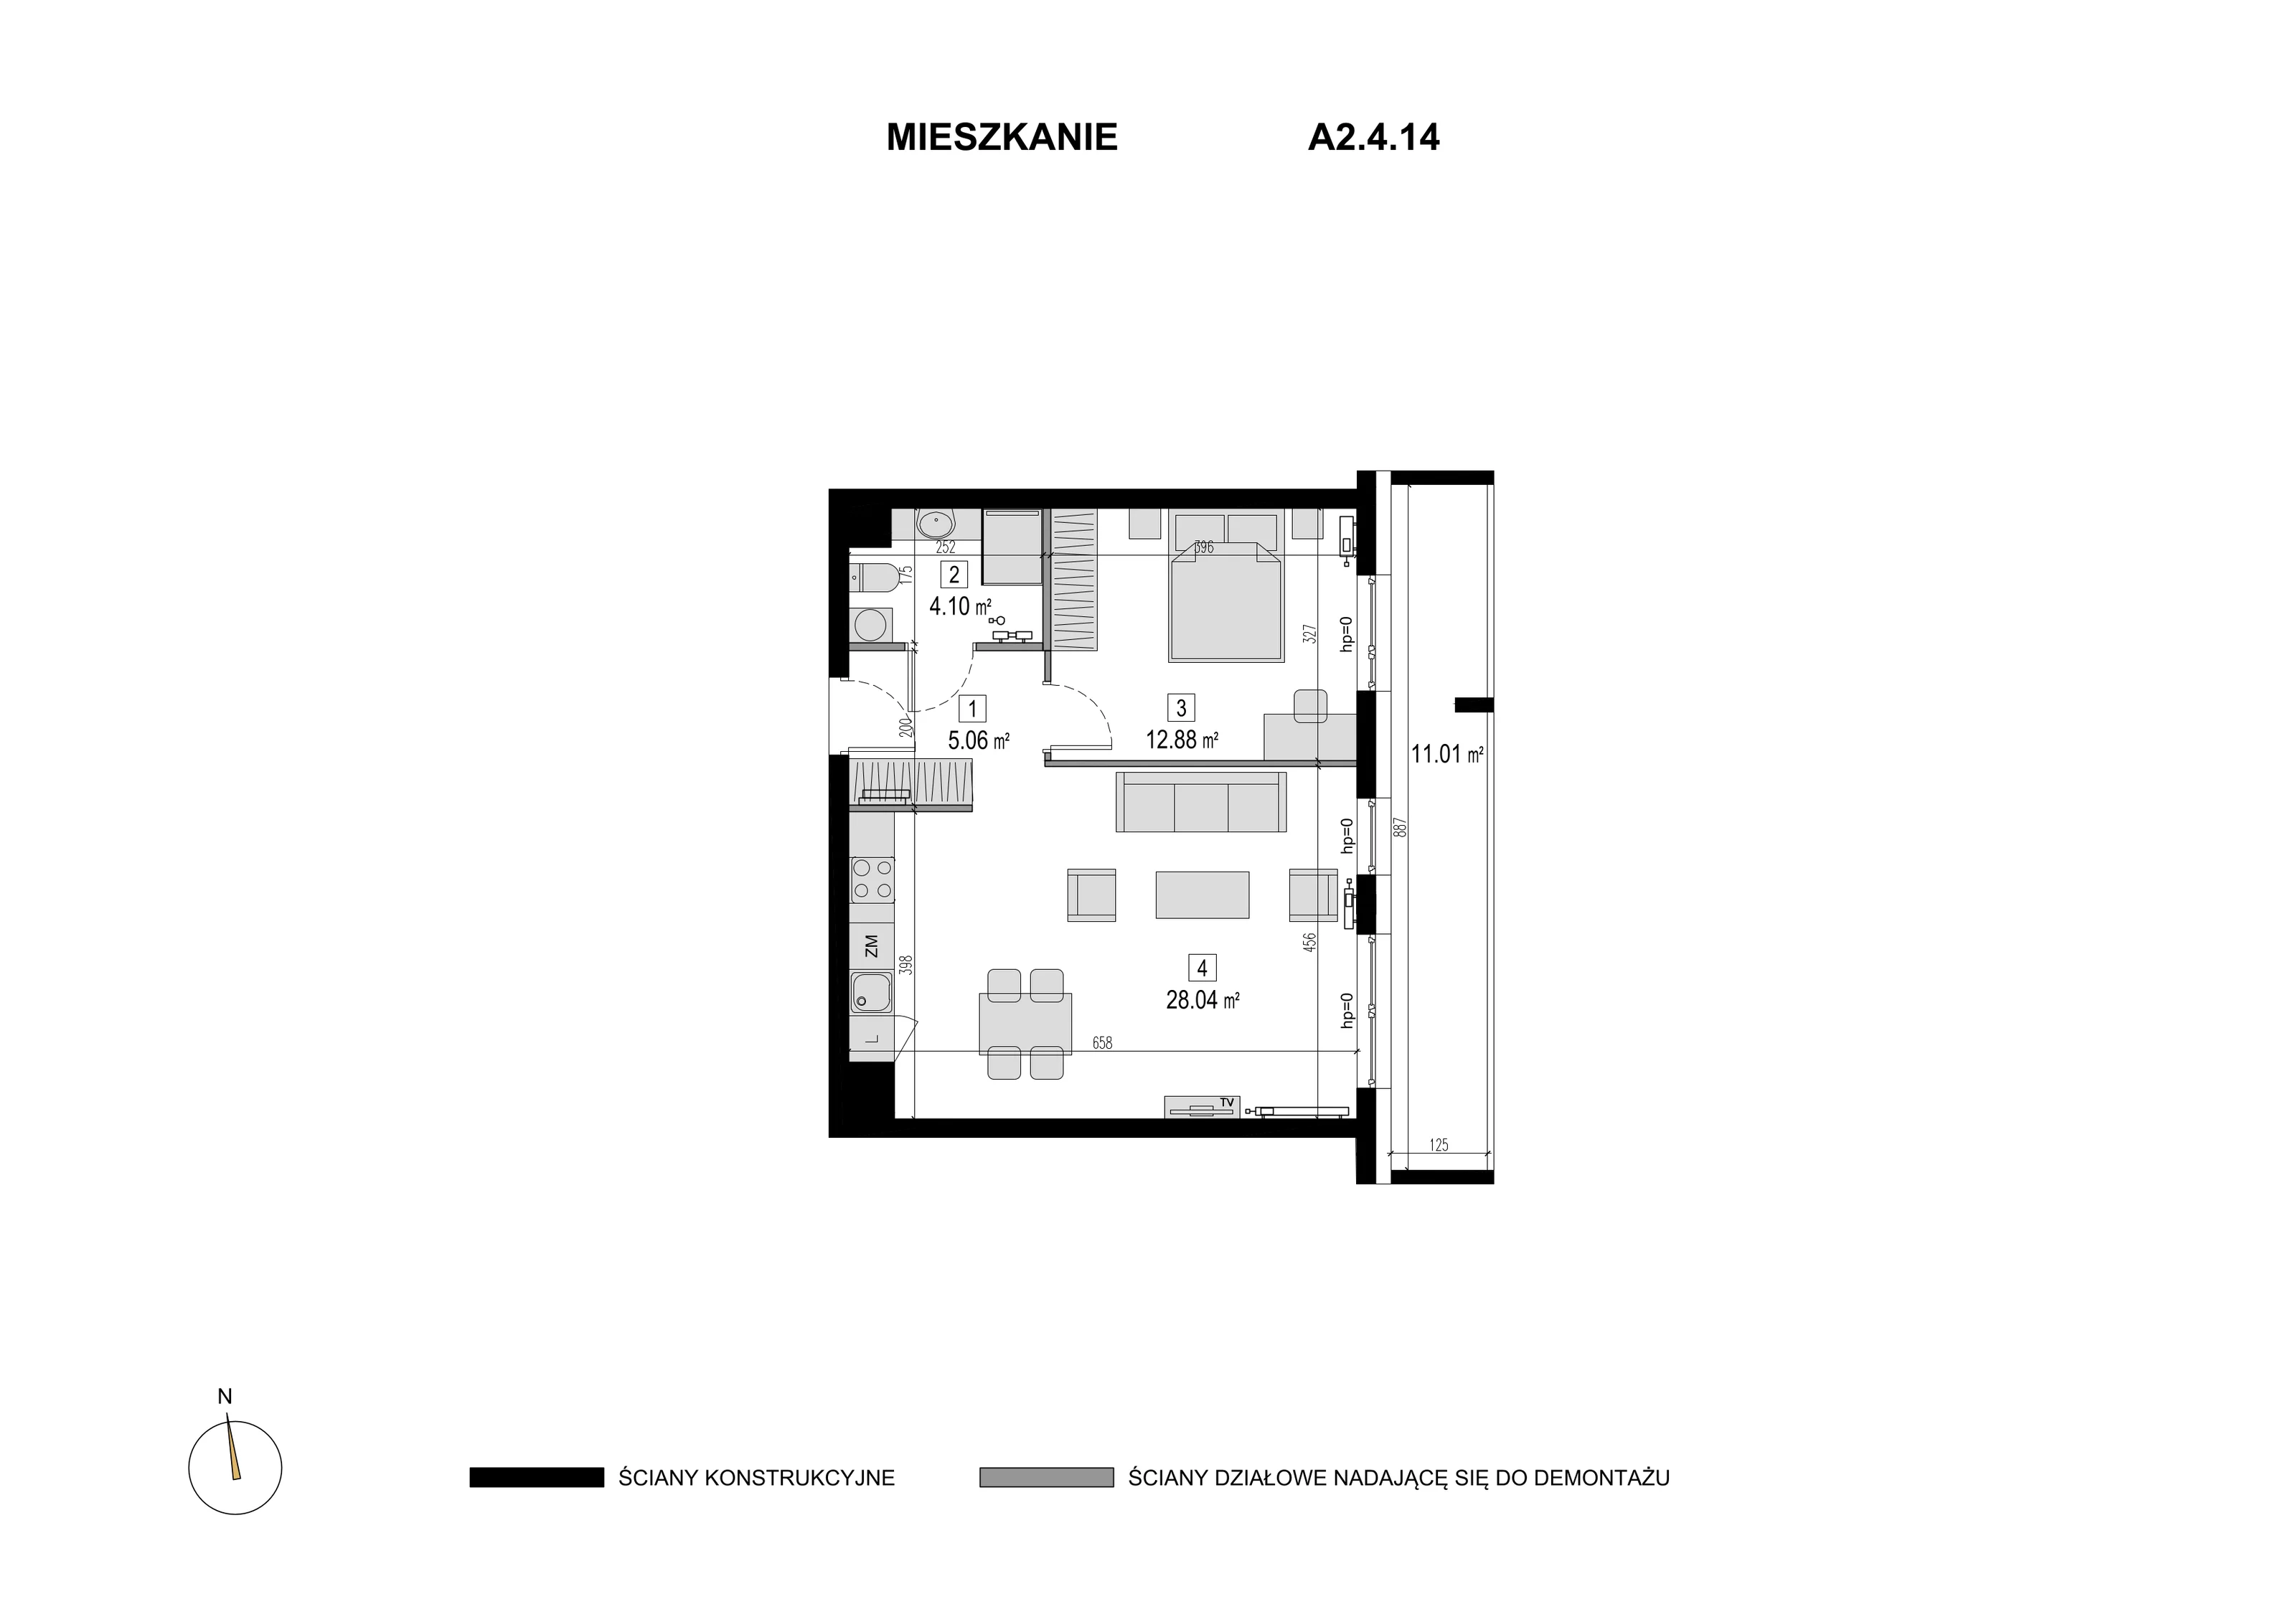 Mieszkanie 50,08 m², piętro 3, oferta nr A2.4.14, Novaforma, Legnica, ul. Chojnowska